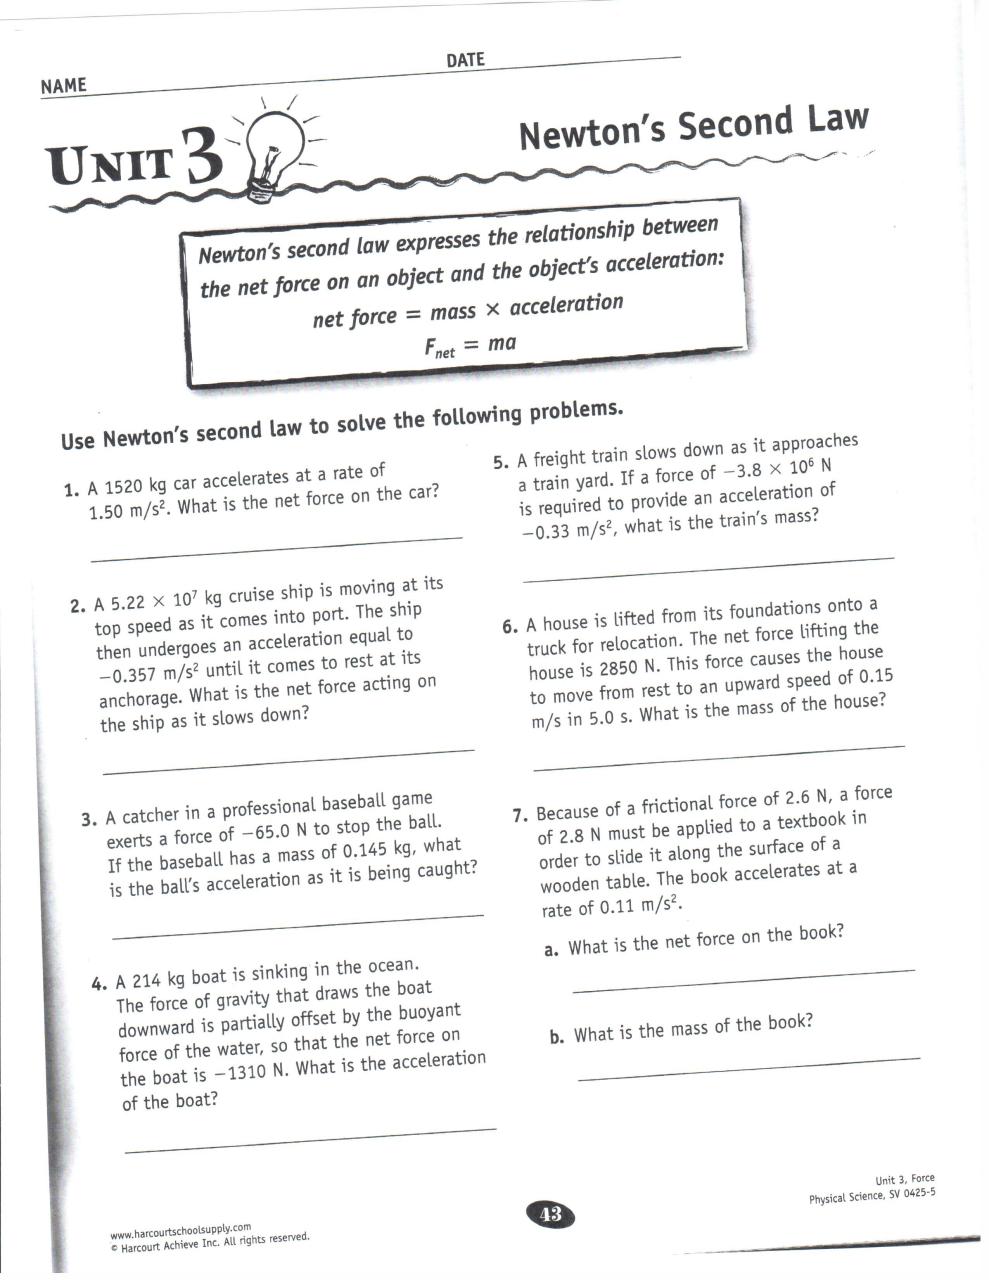 Reading Comprehension Worksheets Pdf For Kindergarten